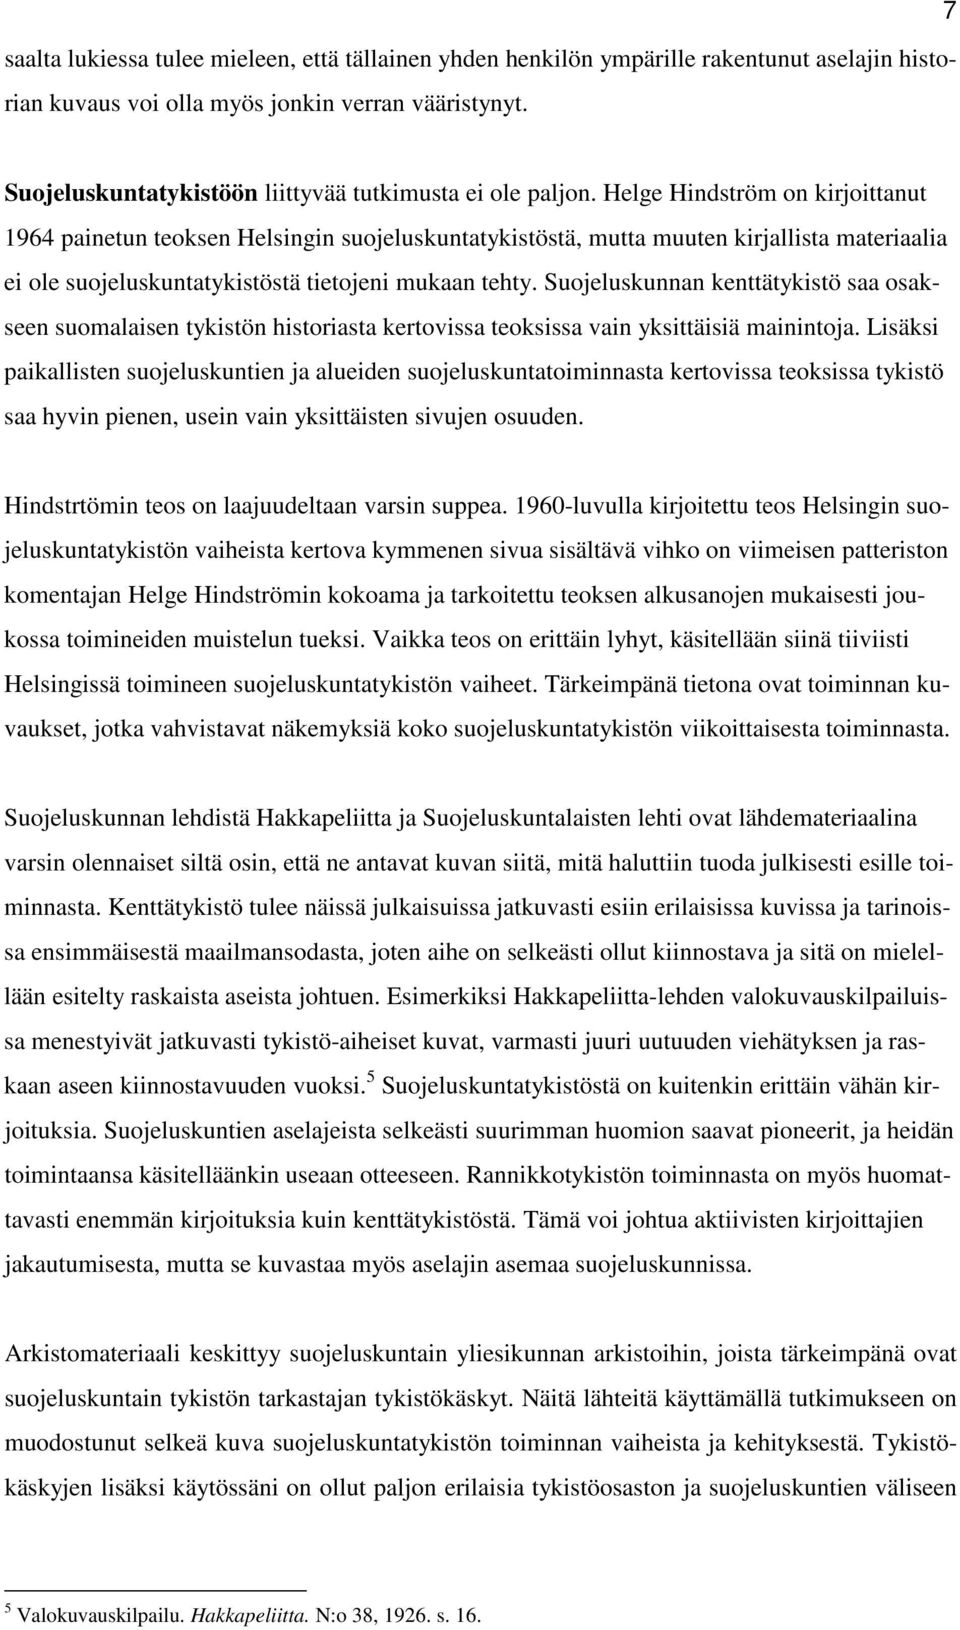 Helge Hindström on kirjoittanut 1964 painetun teoksen Helsingin suojeluskuntatykistöstä, mutta muuten kirjallista materiaalia ei ole suojeluskuntatykistöstä tietojeni mukaan tehty.